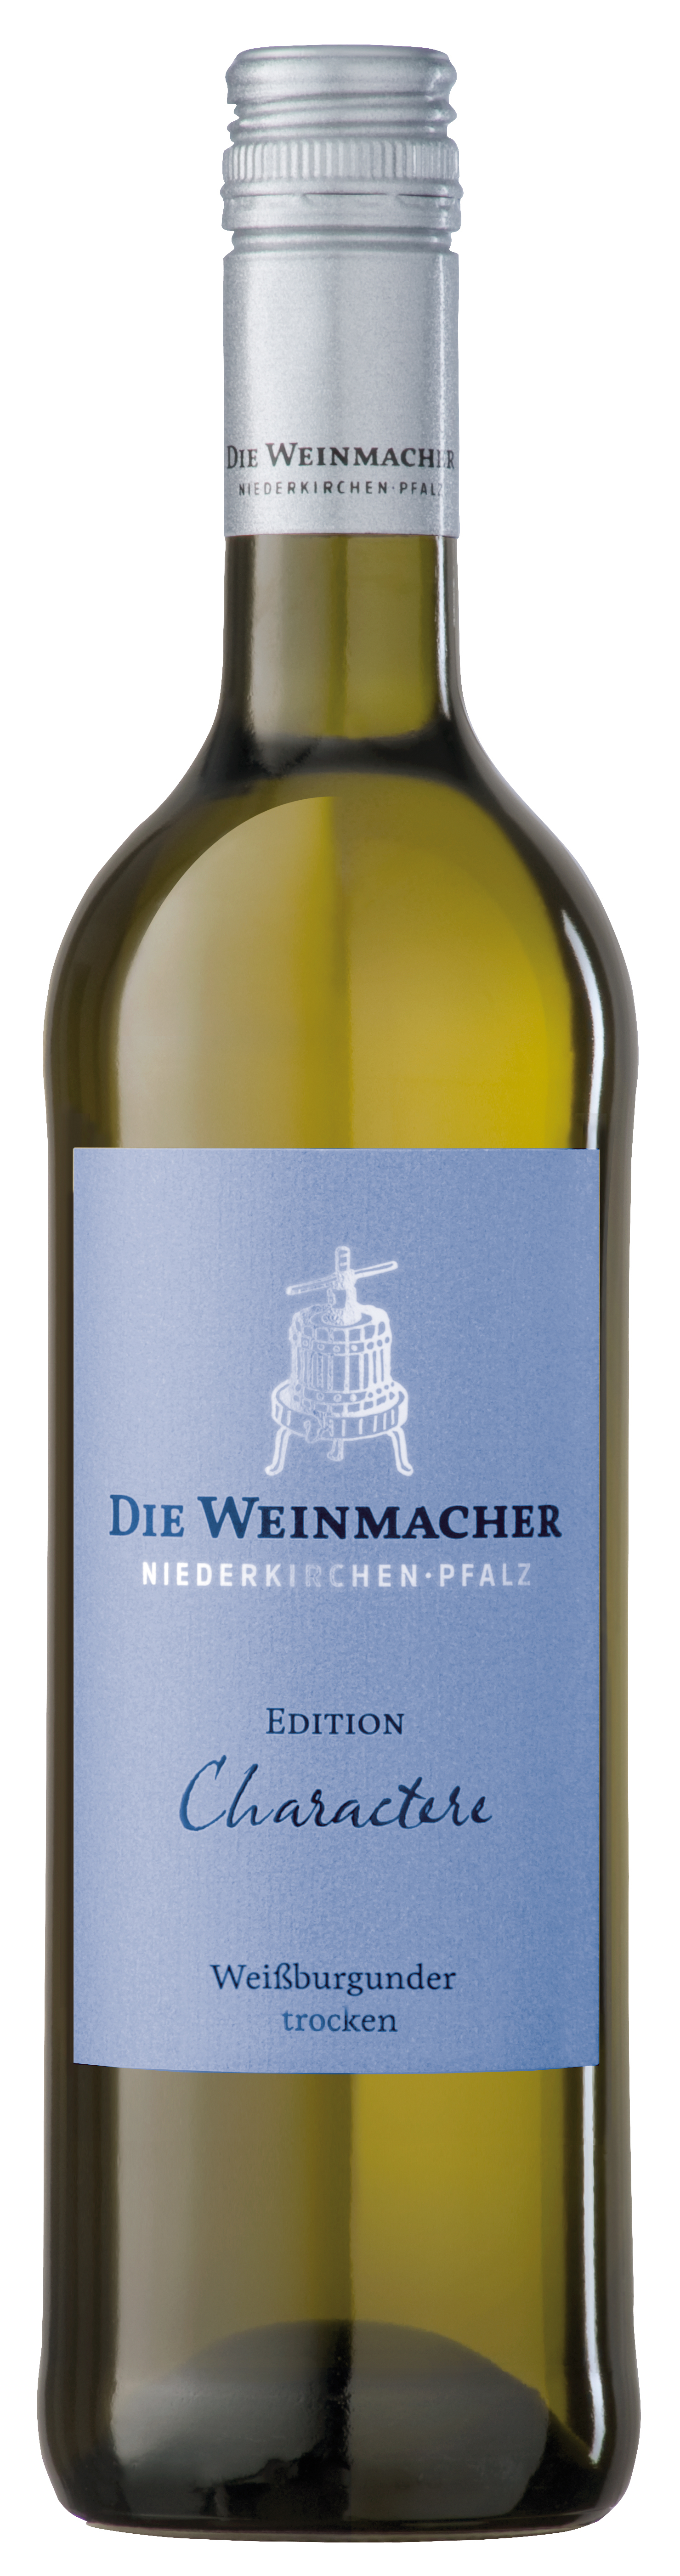 2022 Weißburgunder trocken Edition Charactere 0,75 L - Die Weinmacher